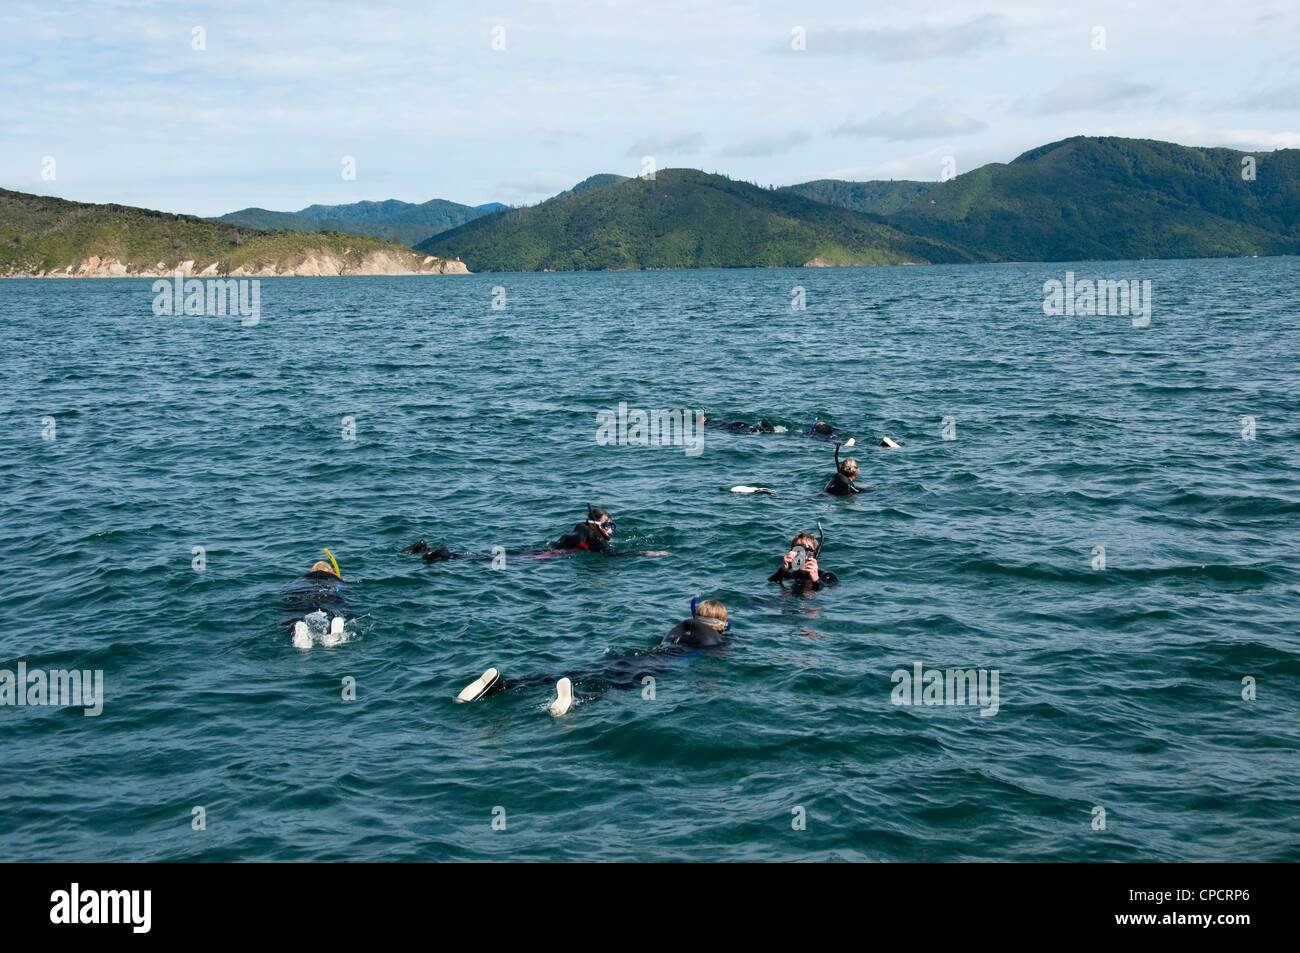 Nuova Zelanda Isola del Sud Picton, nuoto con i delfini su Avvistamento Delfini ecoturistici mentre lo snorkeling in Marlborough Sounds. Foto Stock